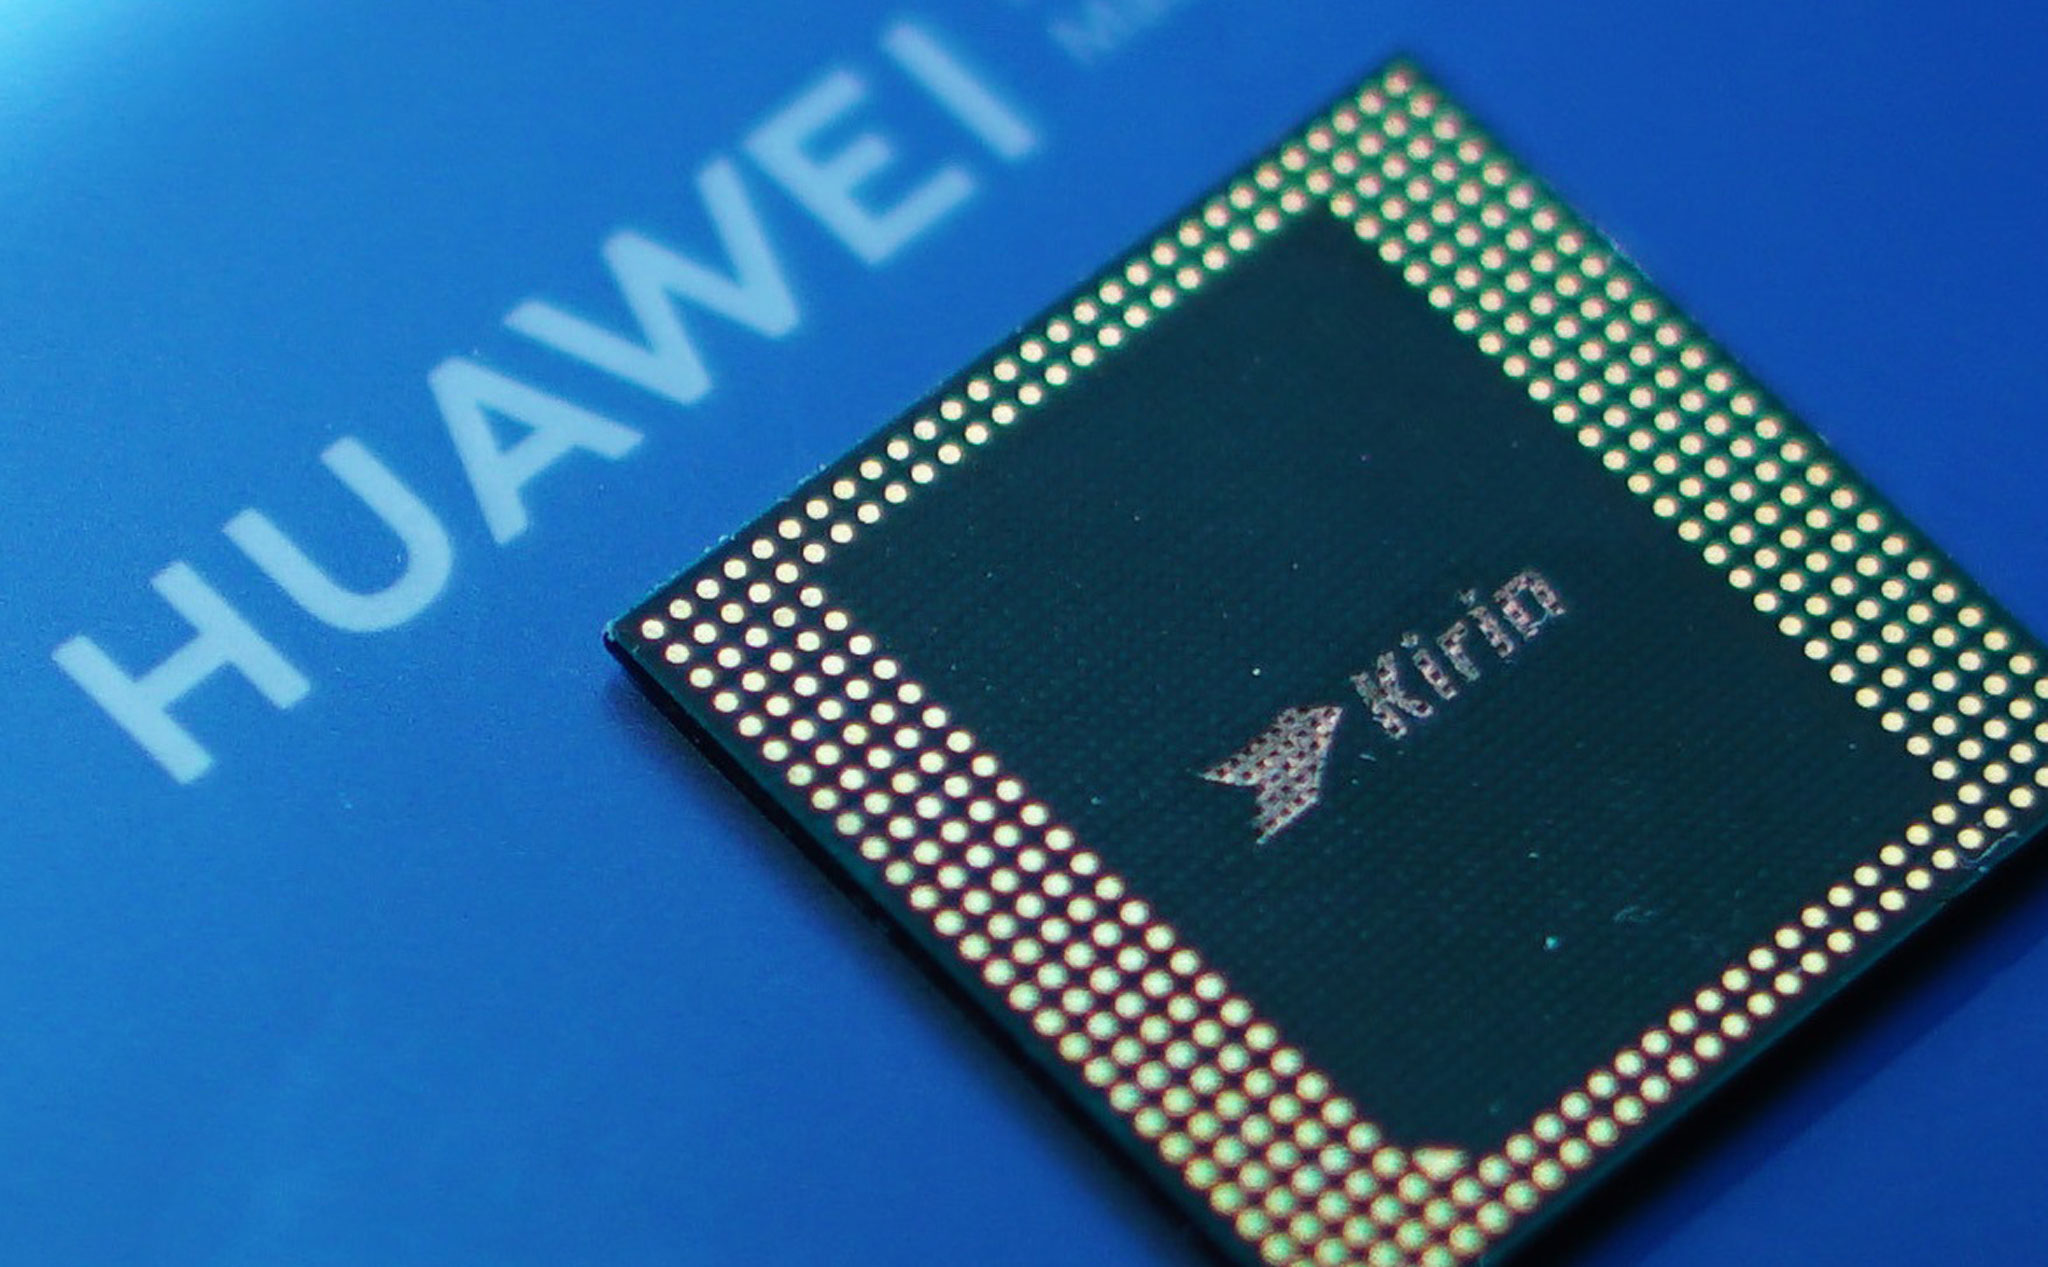 Huawei hoàn tất cơ sở sản xuất chipset đầu tiên của riêng mình